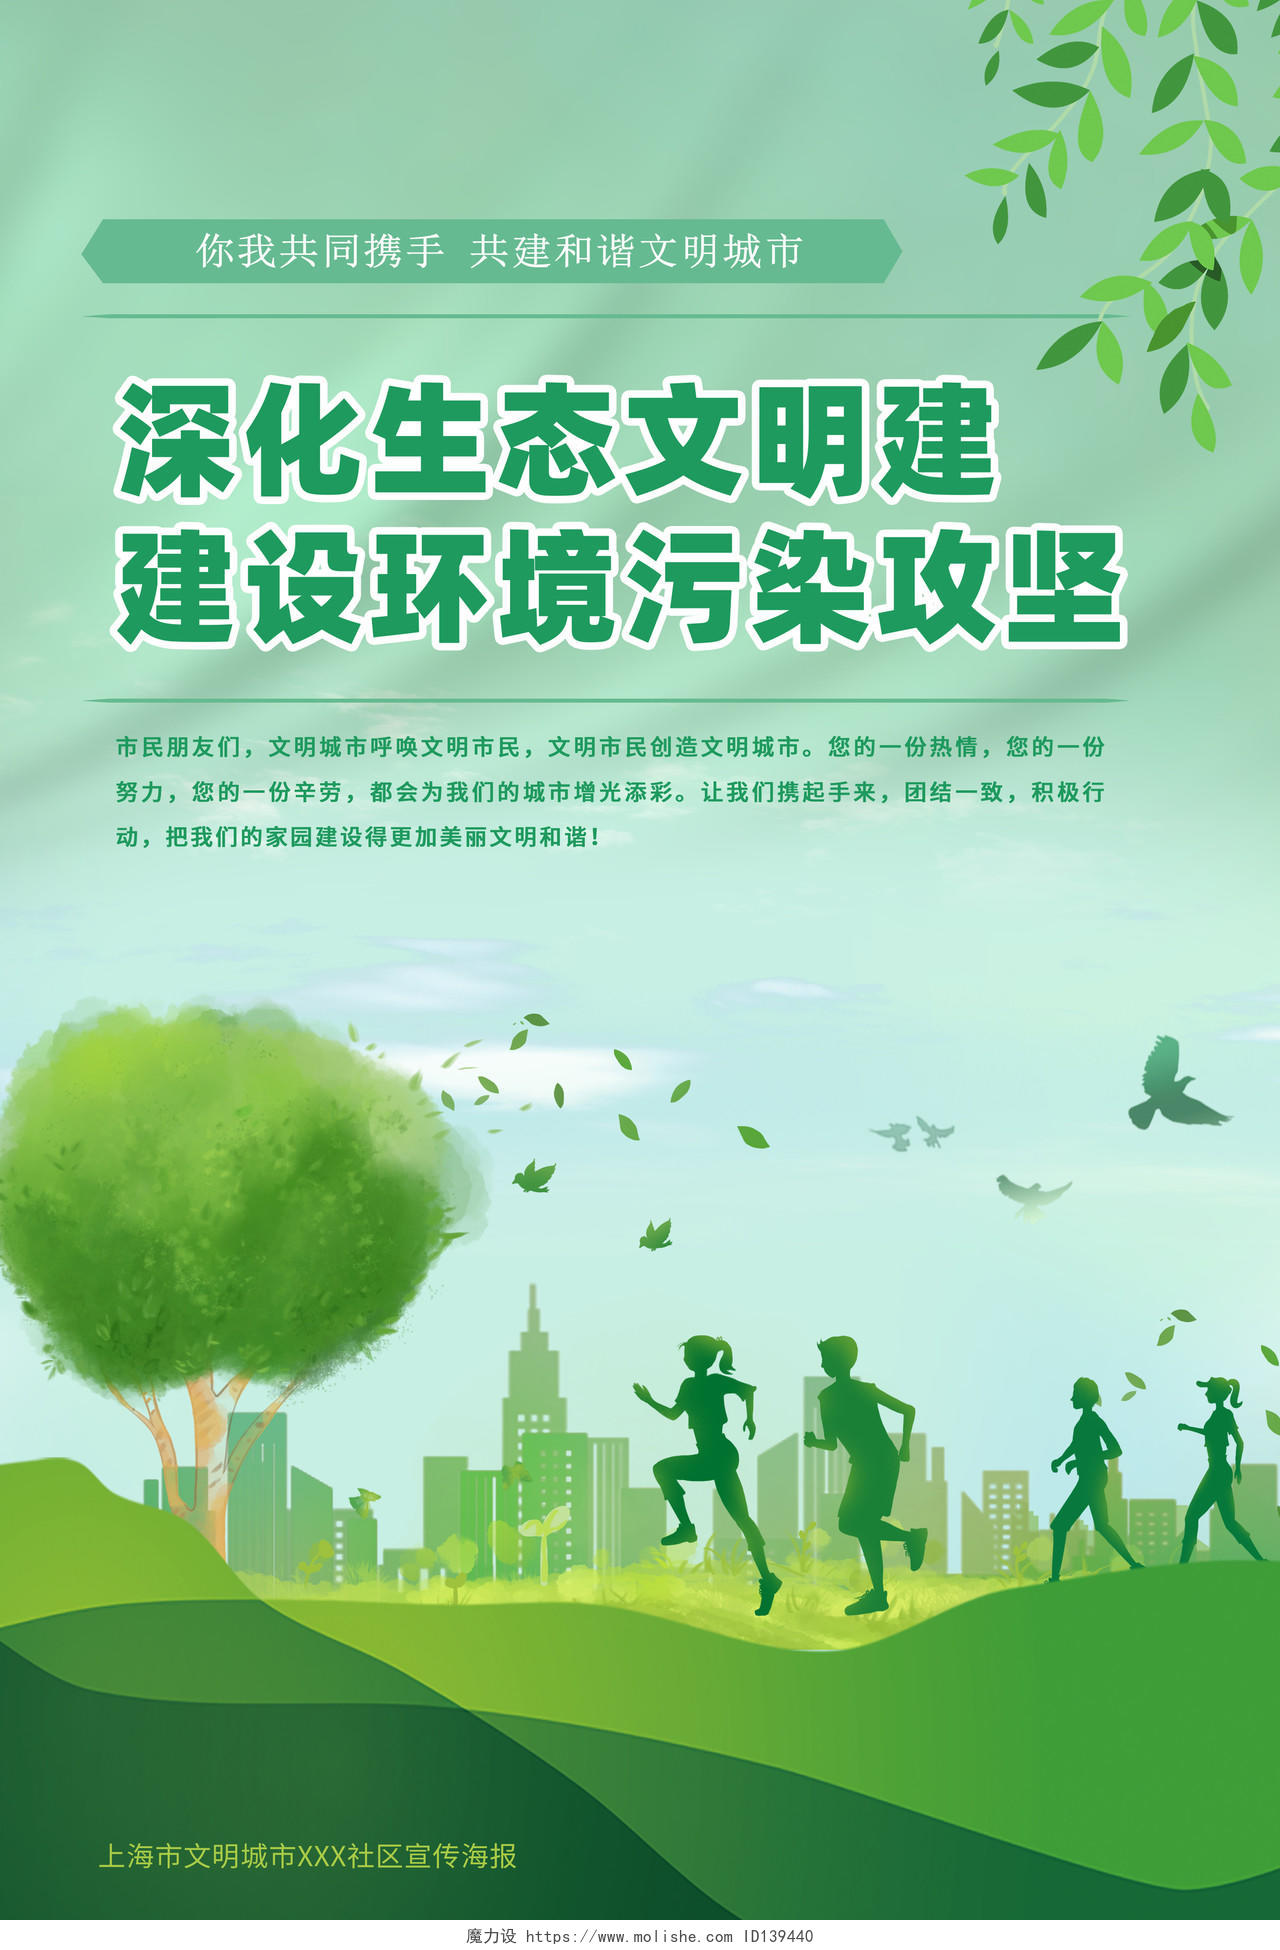 粉绿色清新插画创建文明城市共建美好家园宣传海报